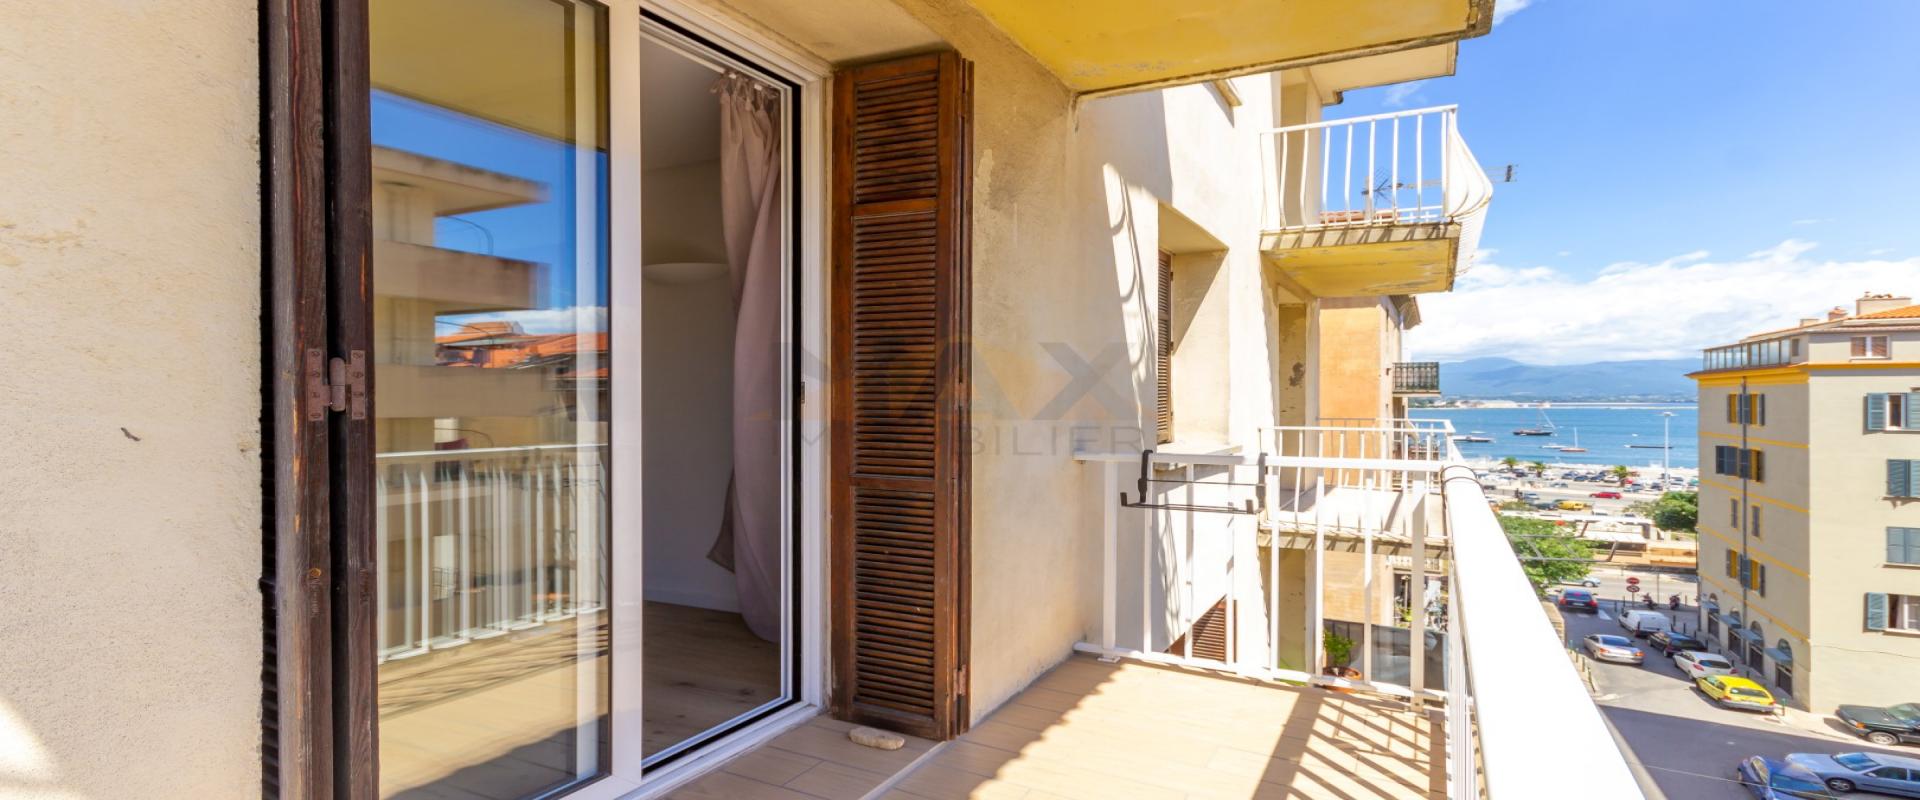 En Corse, à AJACCIO, vente d'un appartement F2 de 64 m² entièrement rénové, quartier Sainte Lucie 